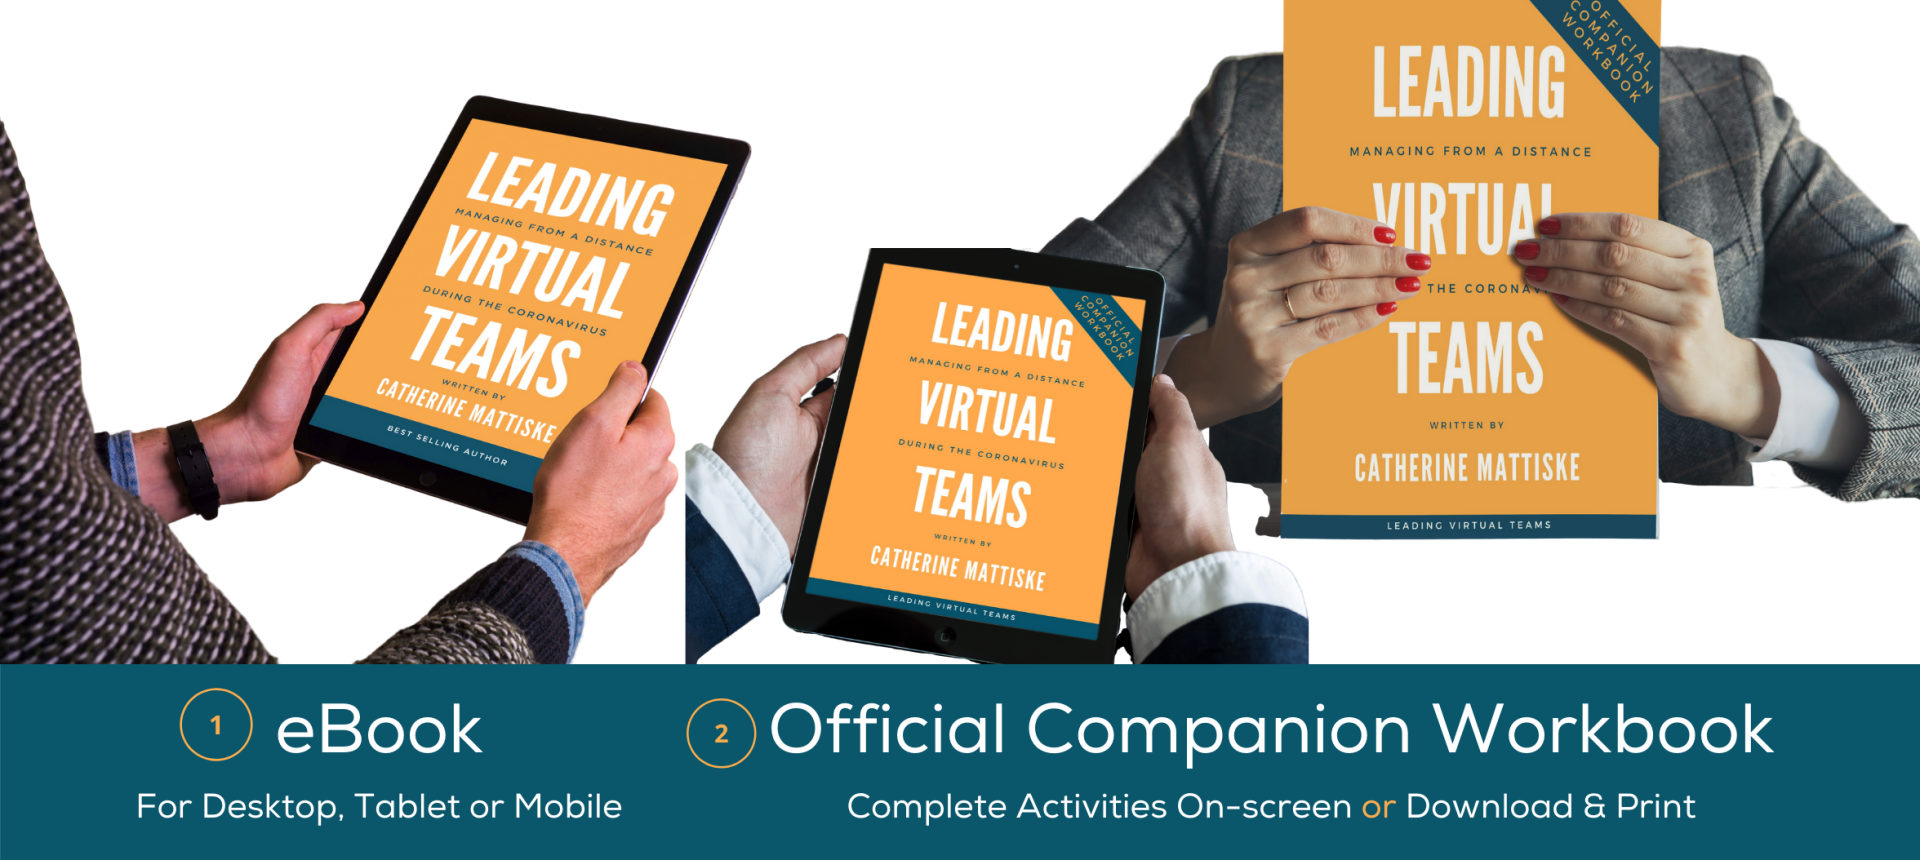 Leading Virtual Teams eBook and Workbook package